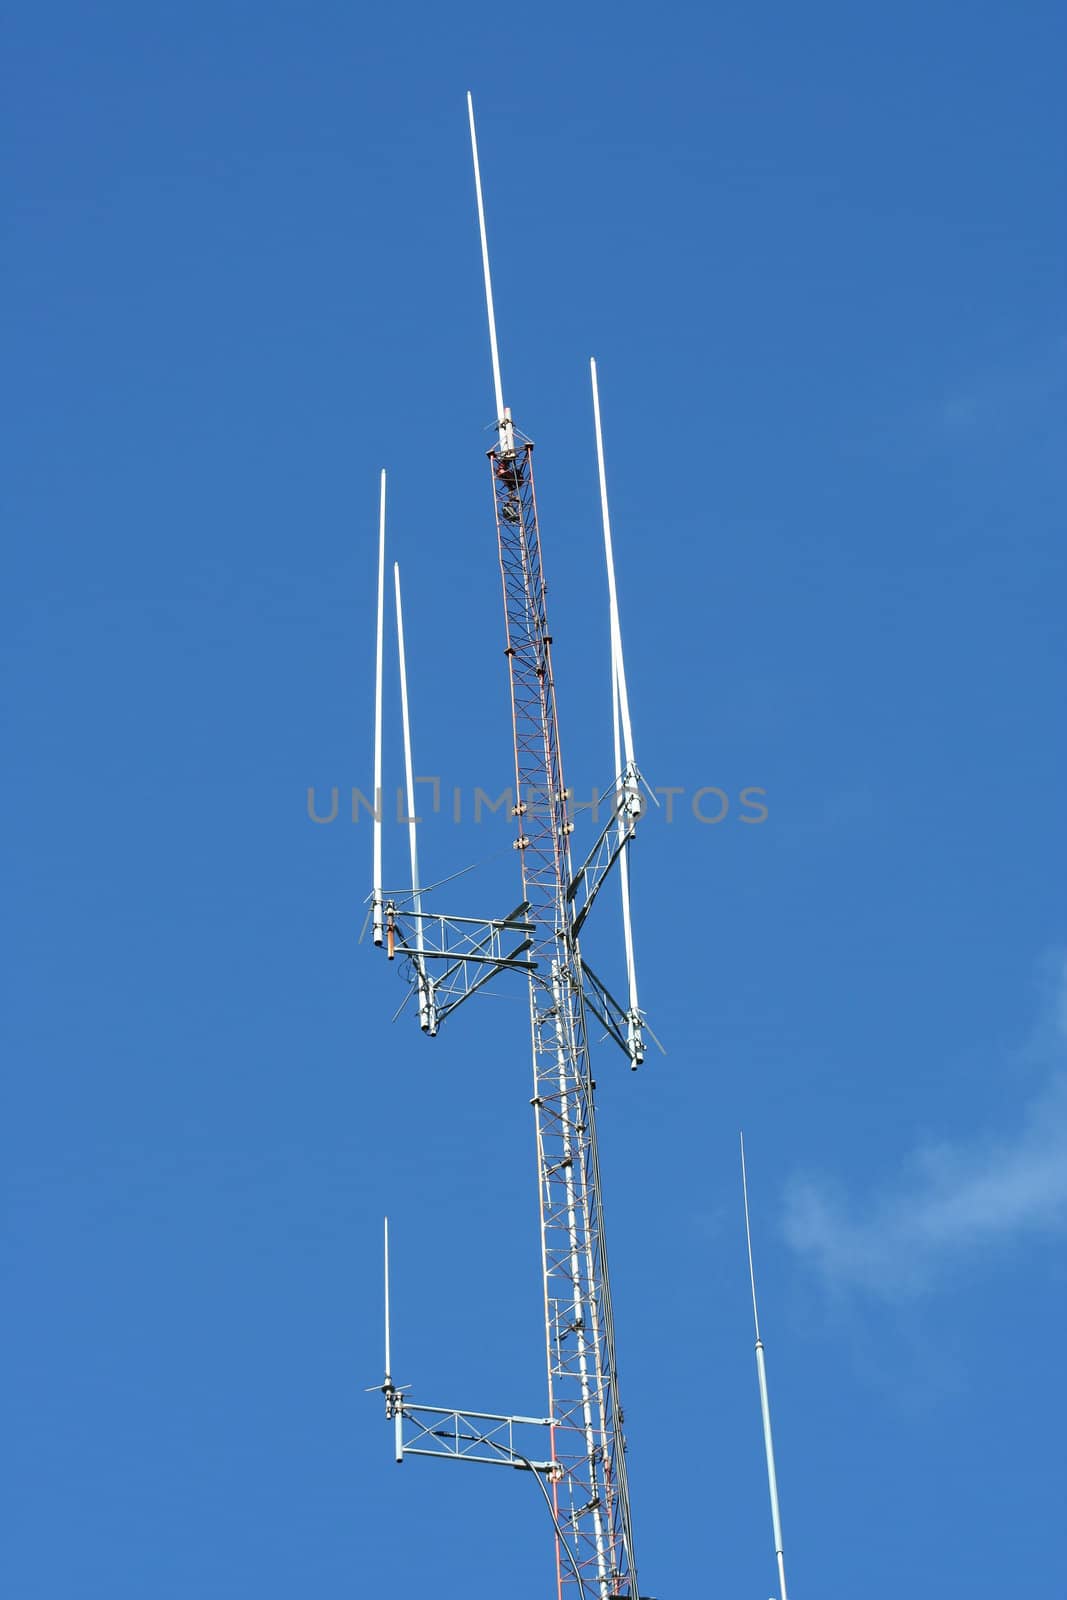 Radio Antenna by njnightsky